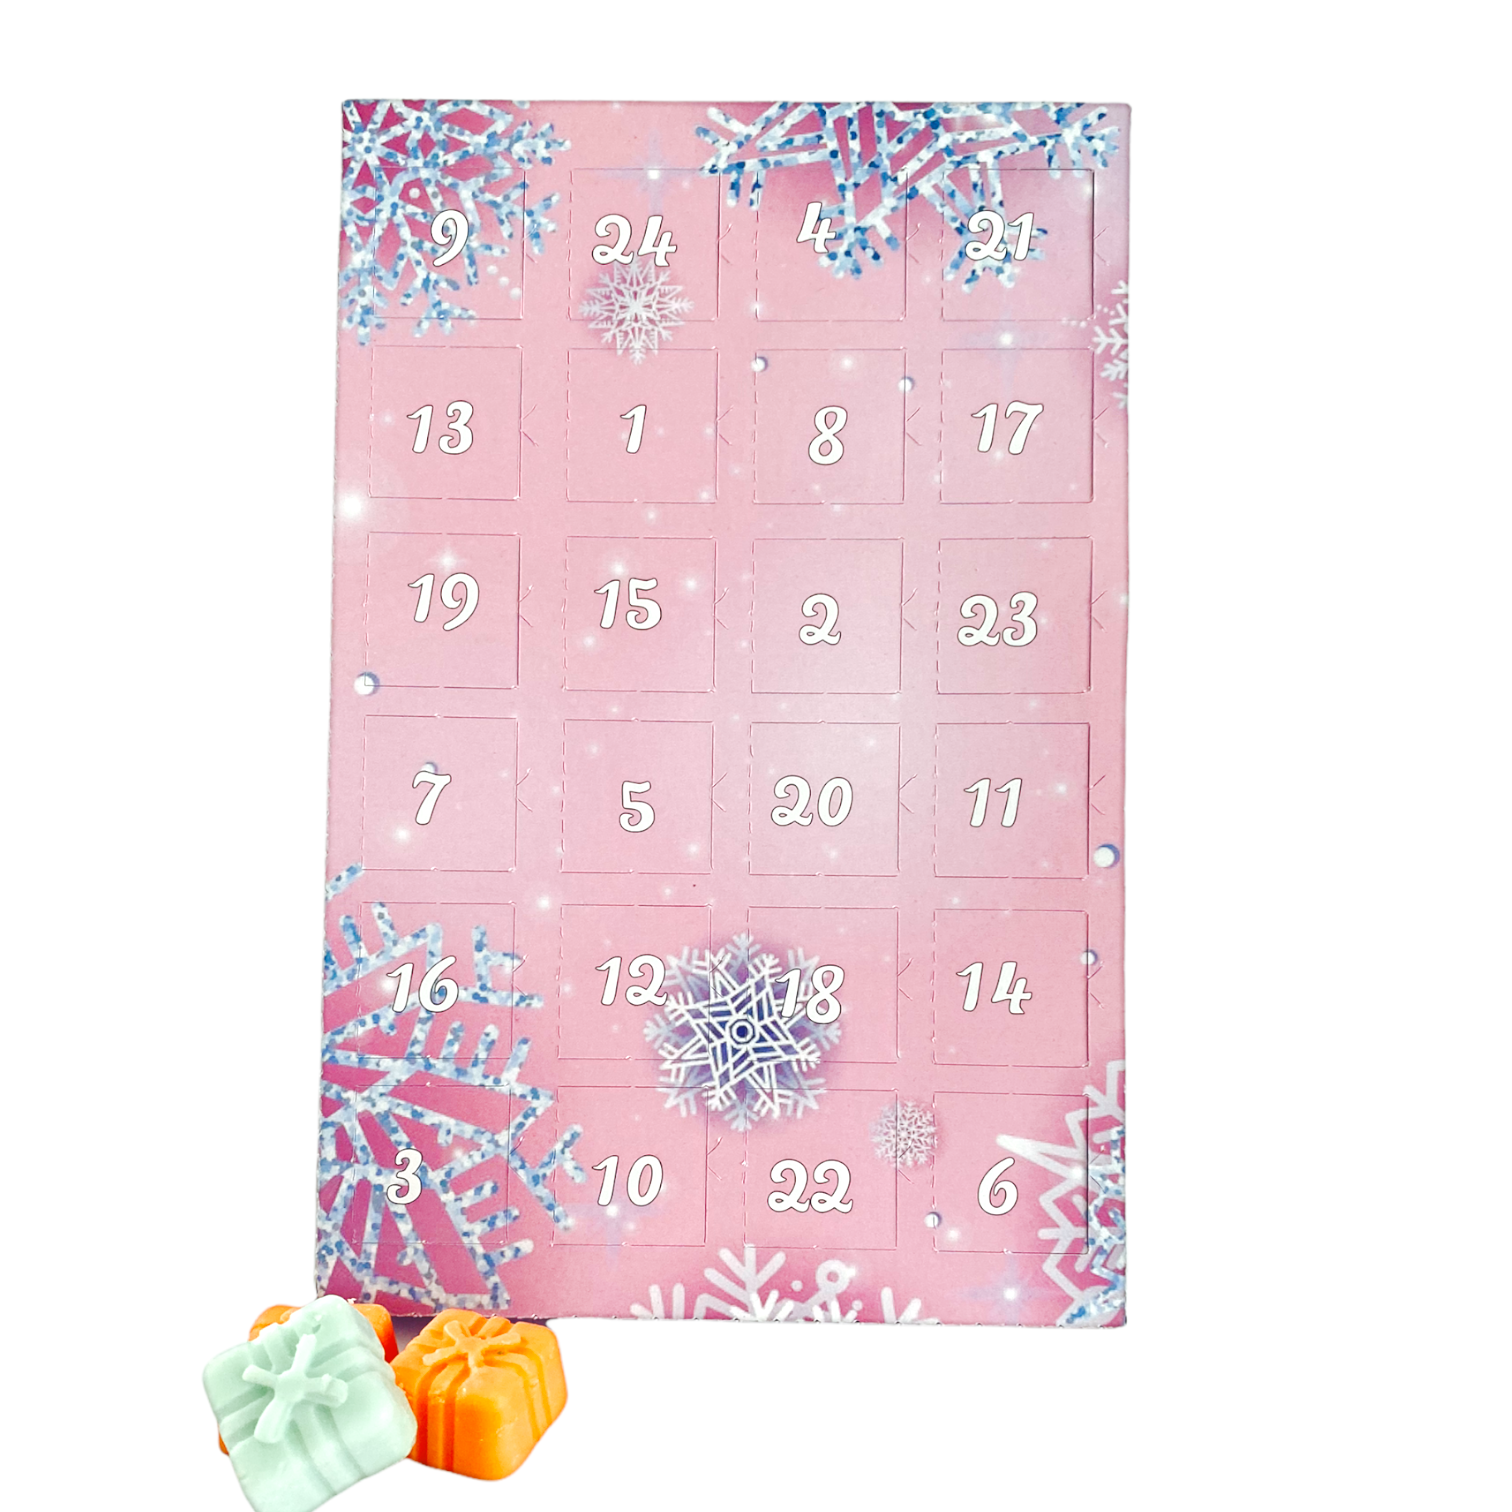 wax melt advent calendar